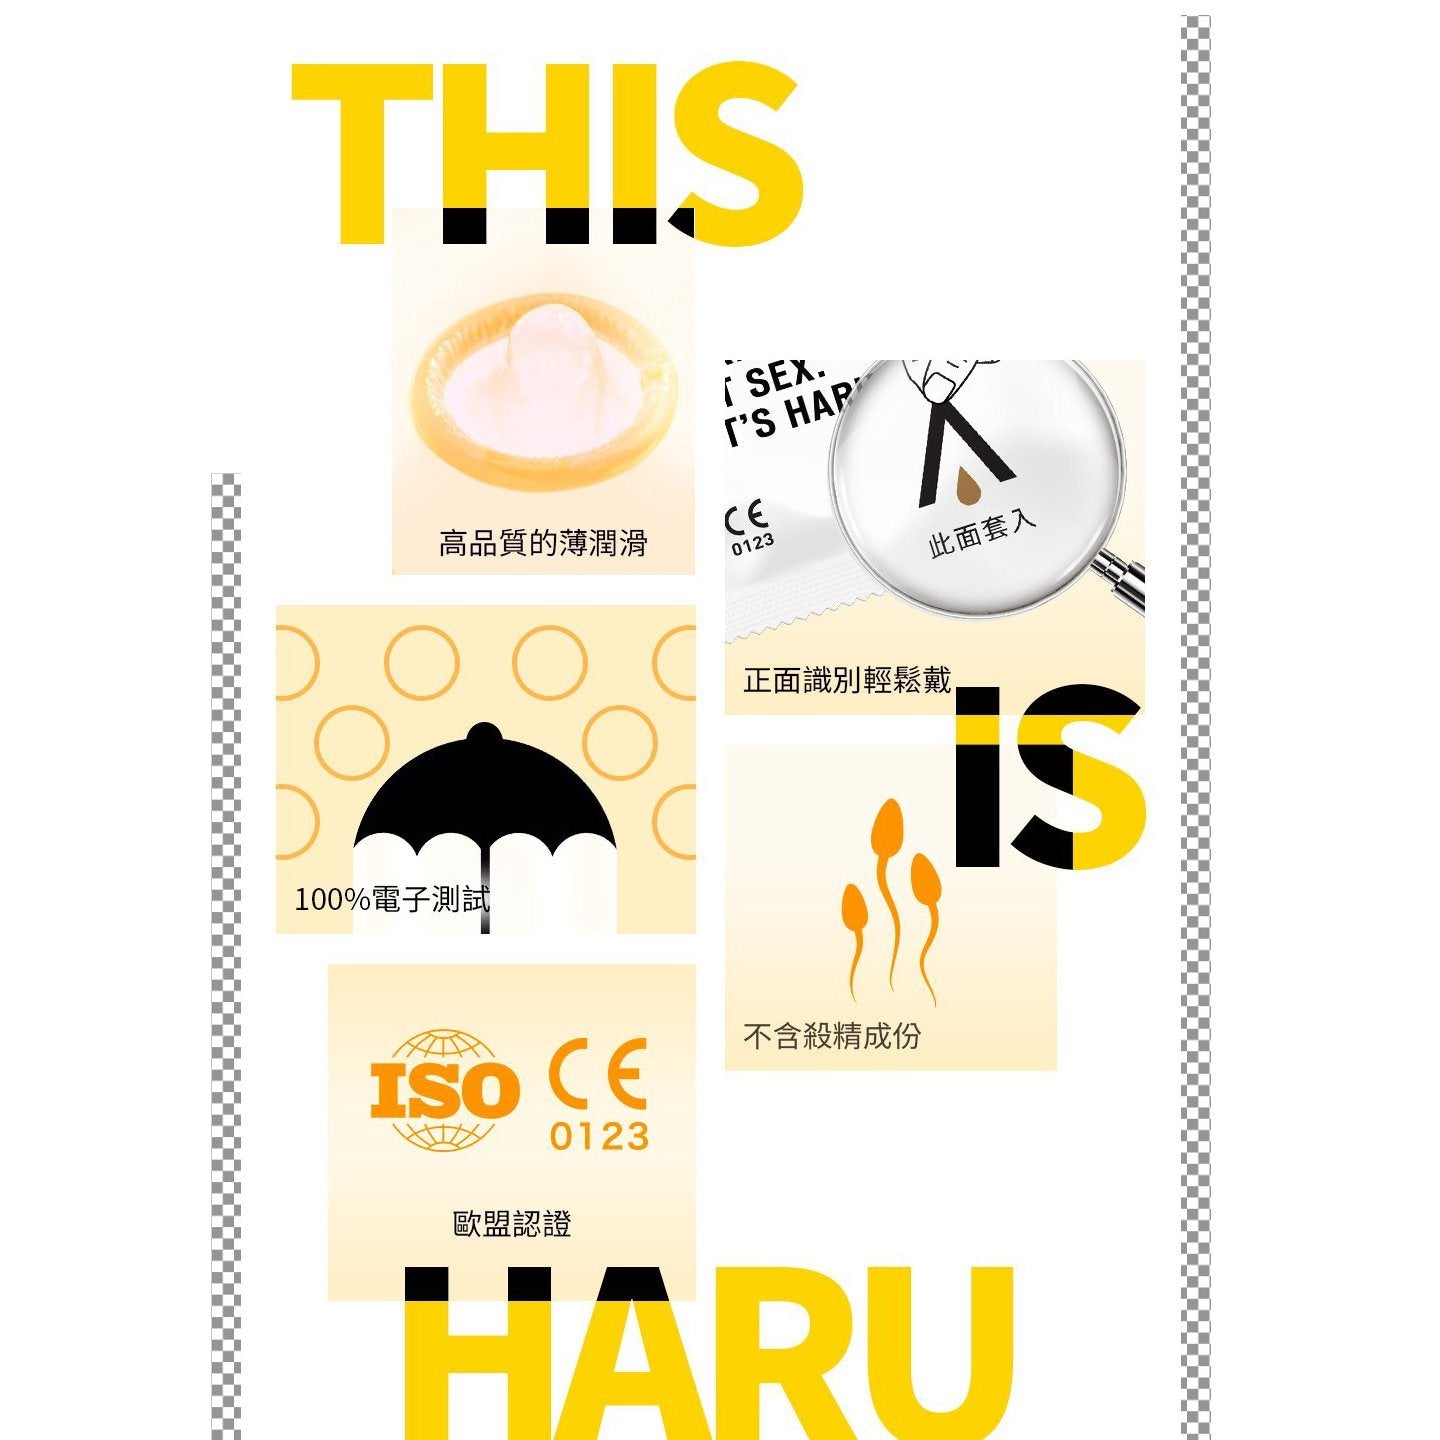 HARU Ultra Thin 超薄型 乳膠安全套 10 片裝 安全套 購買